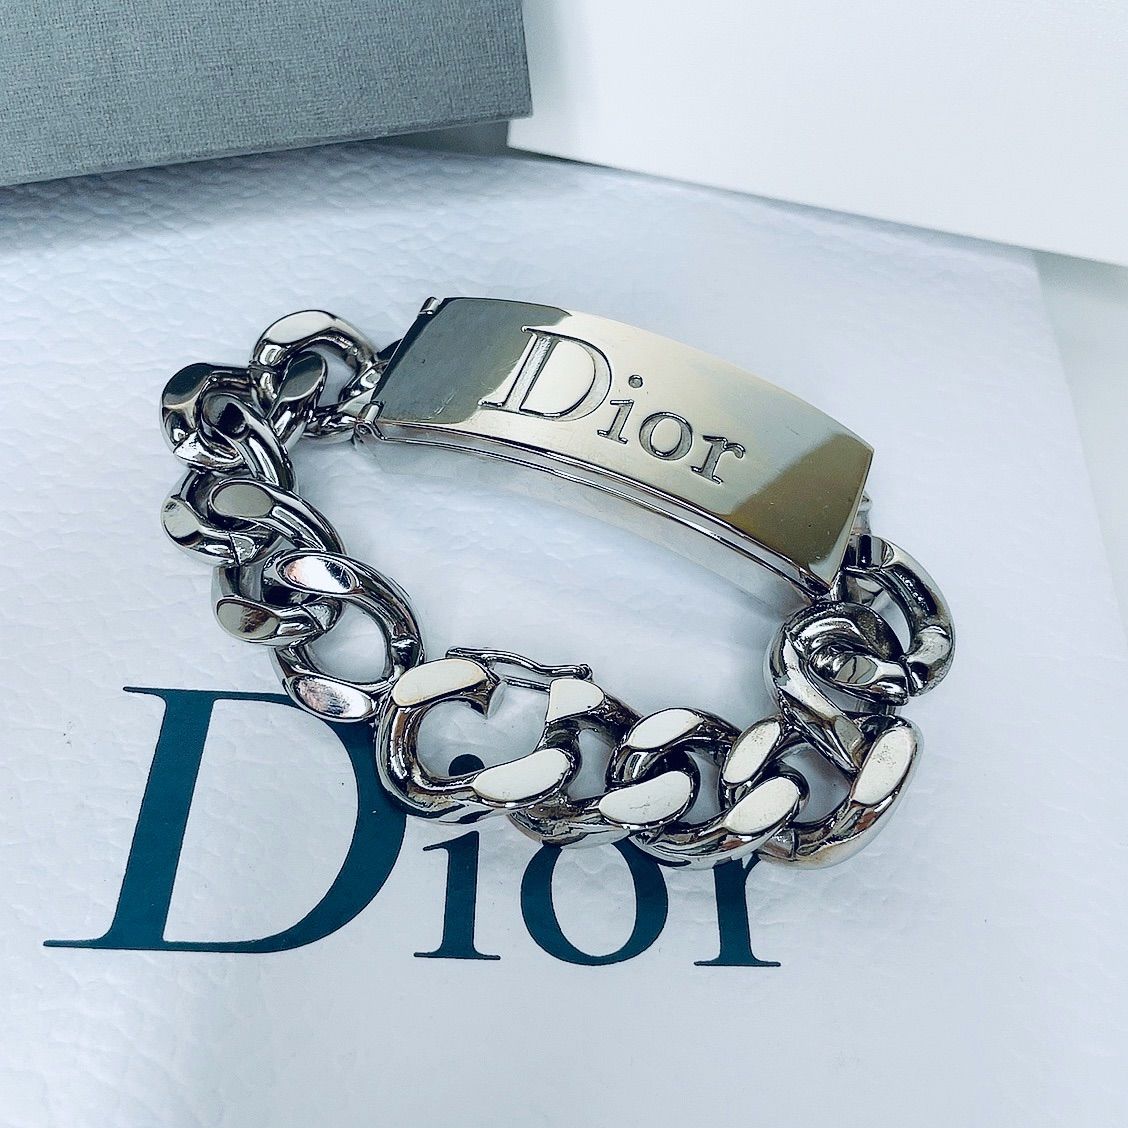 Christian Dior Diorゴルメット リップグロスブレスレット - ブレスレット